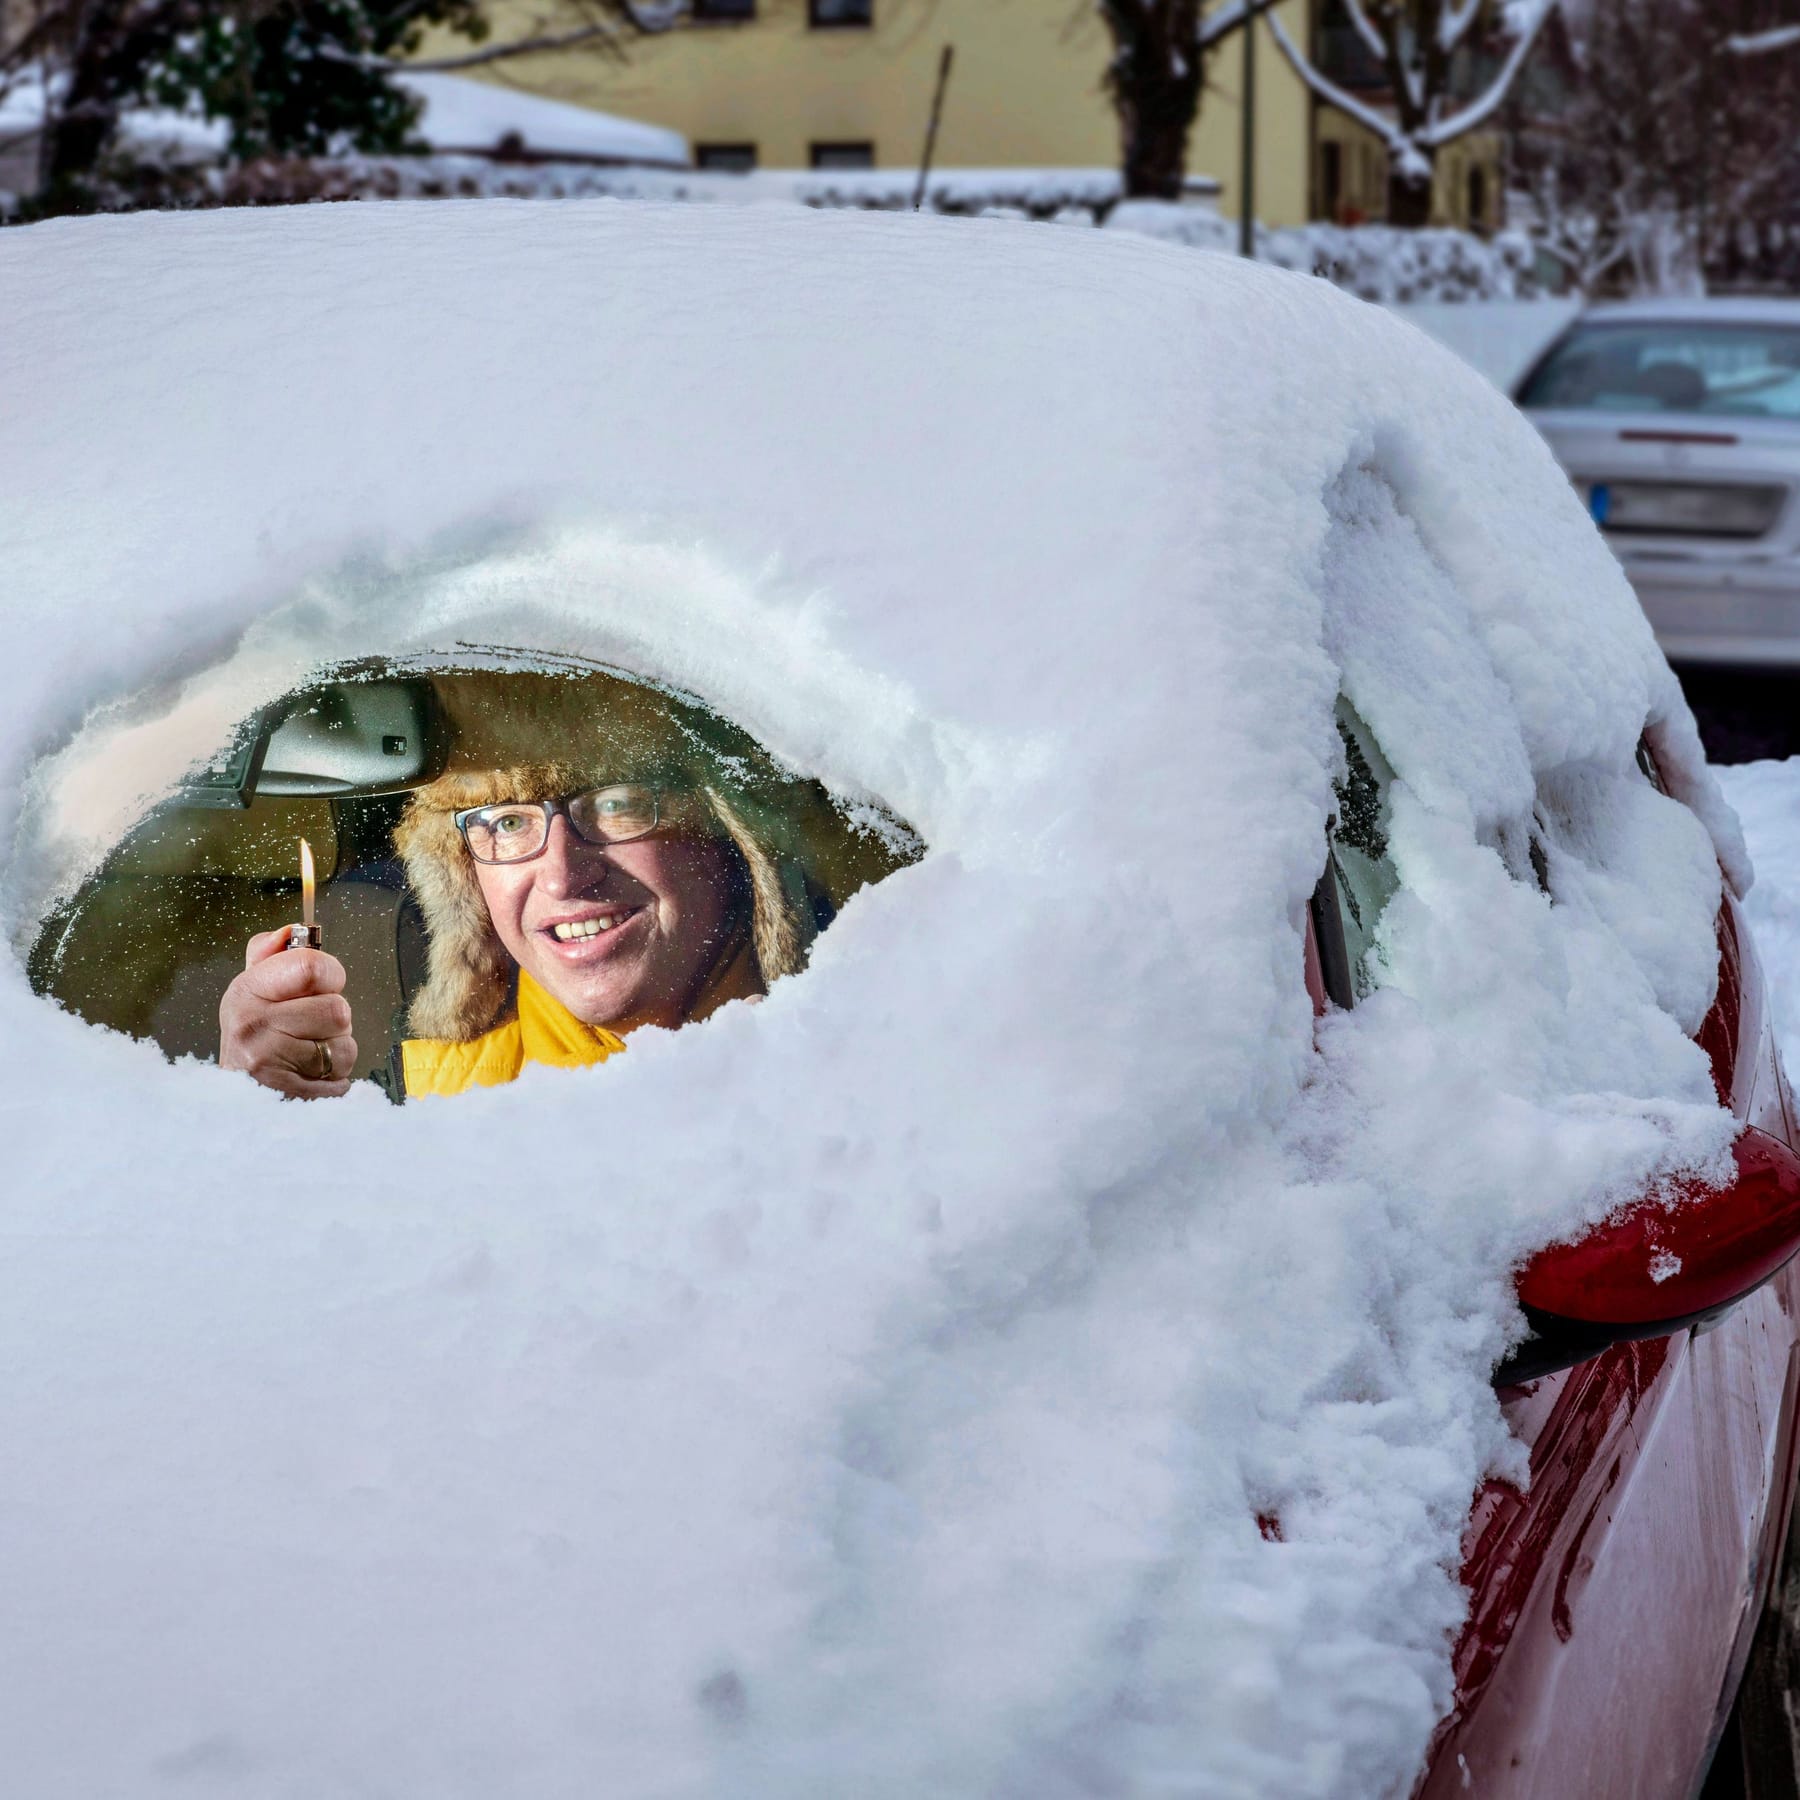 Kälteschock im Winter - schaden Minusgrade dem E-Auto? – Magazin